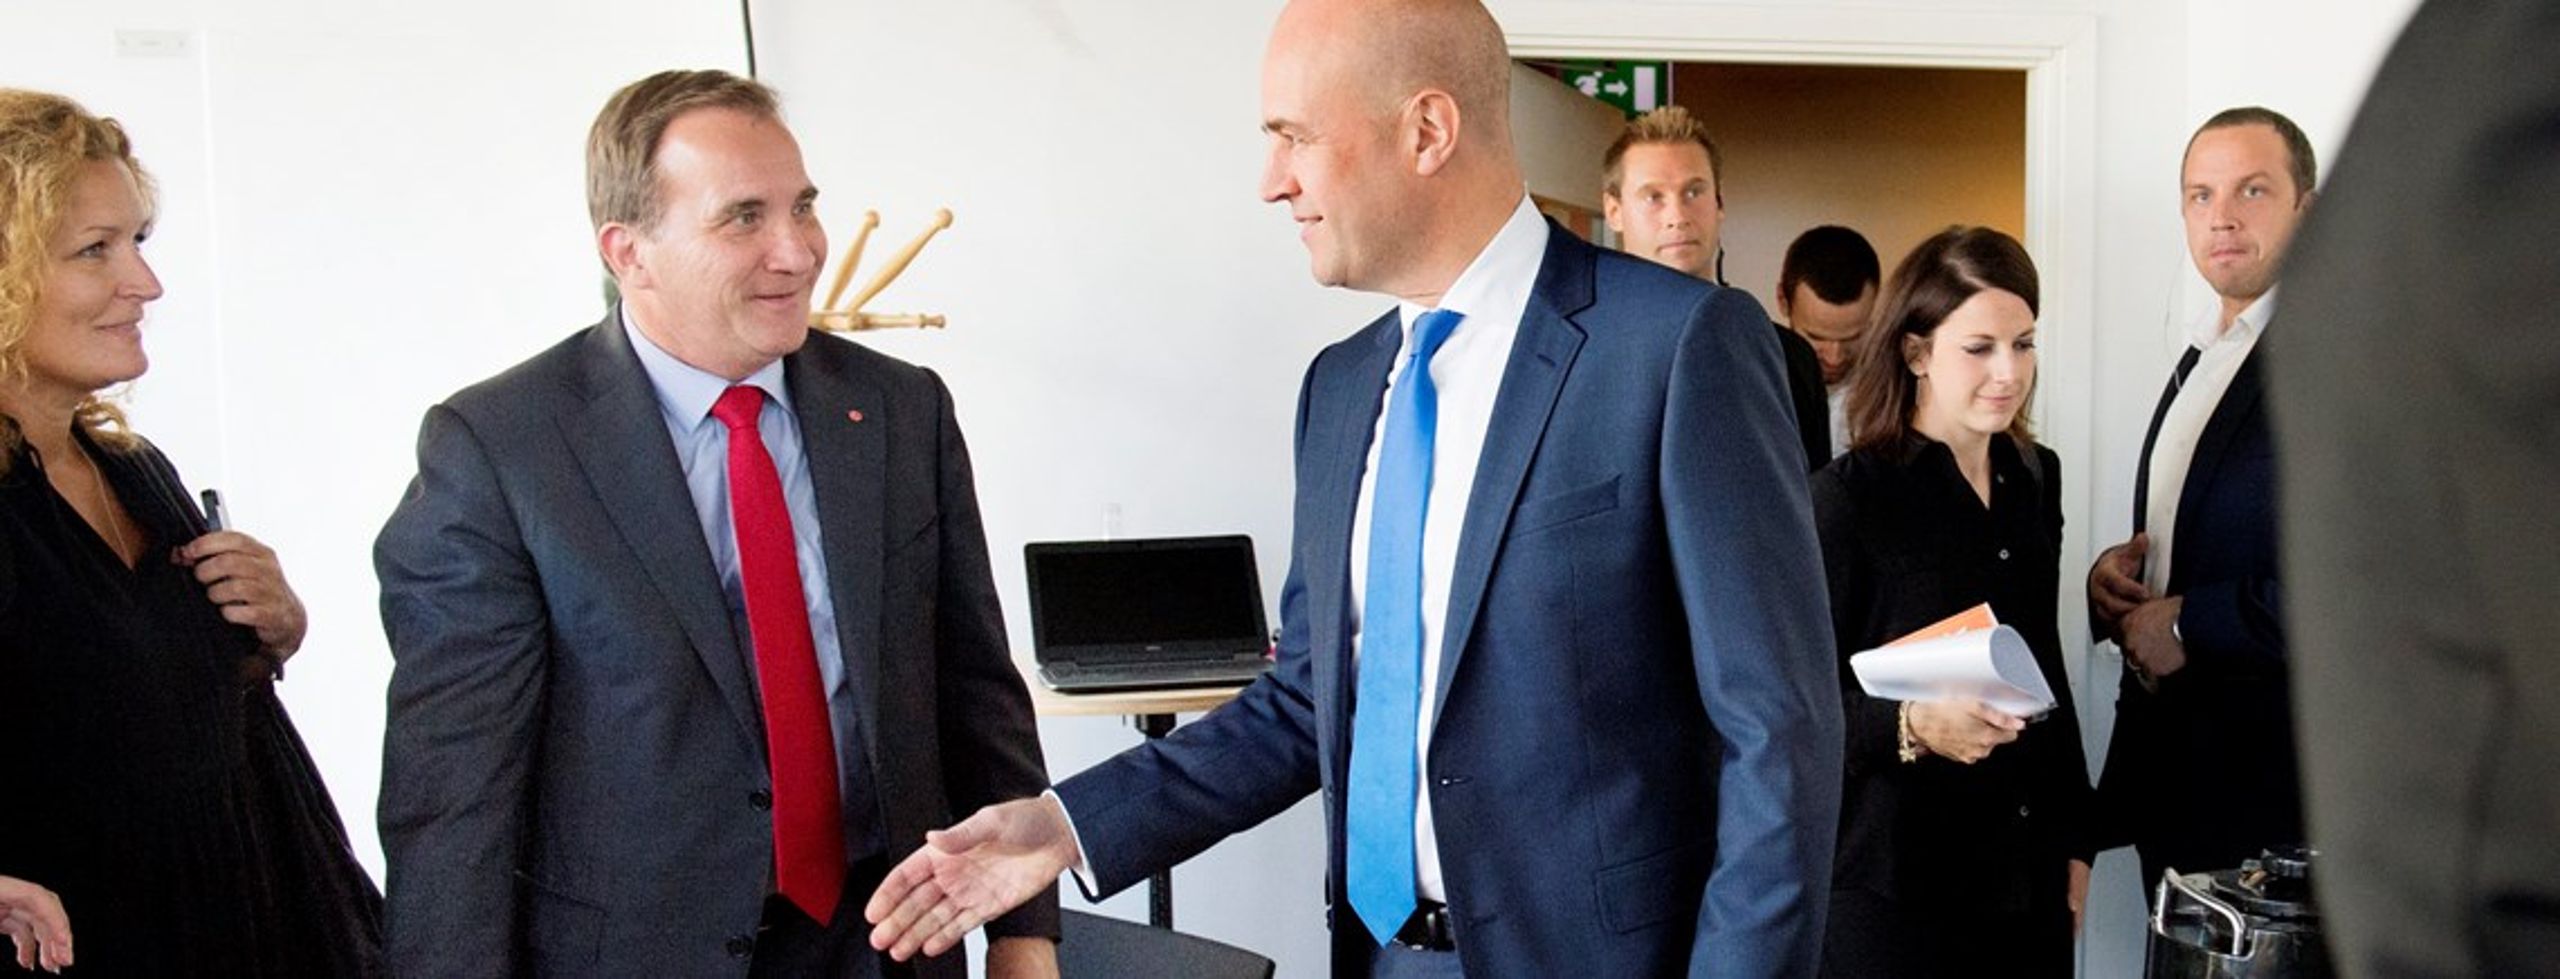 Partilederduel i Kulturhuset i Stockholm&nbsp;mellem statsminister Fredrik Reinfeldt (M) med blåt slips&nbsp;og Socialdemokraternes partileder Stefan Löfven (S) med rødt. Duellen&nbsp;blev sendt&nbsp;i Sveriges Radios P1 i fredags.&nbsp;